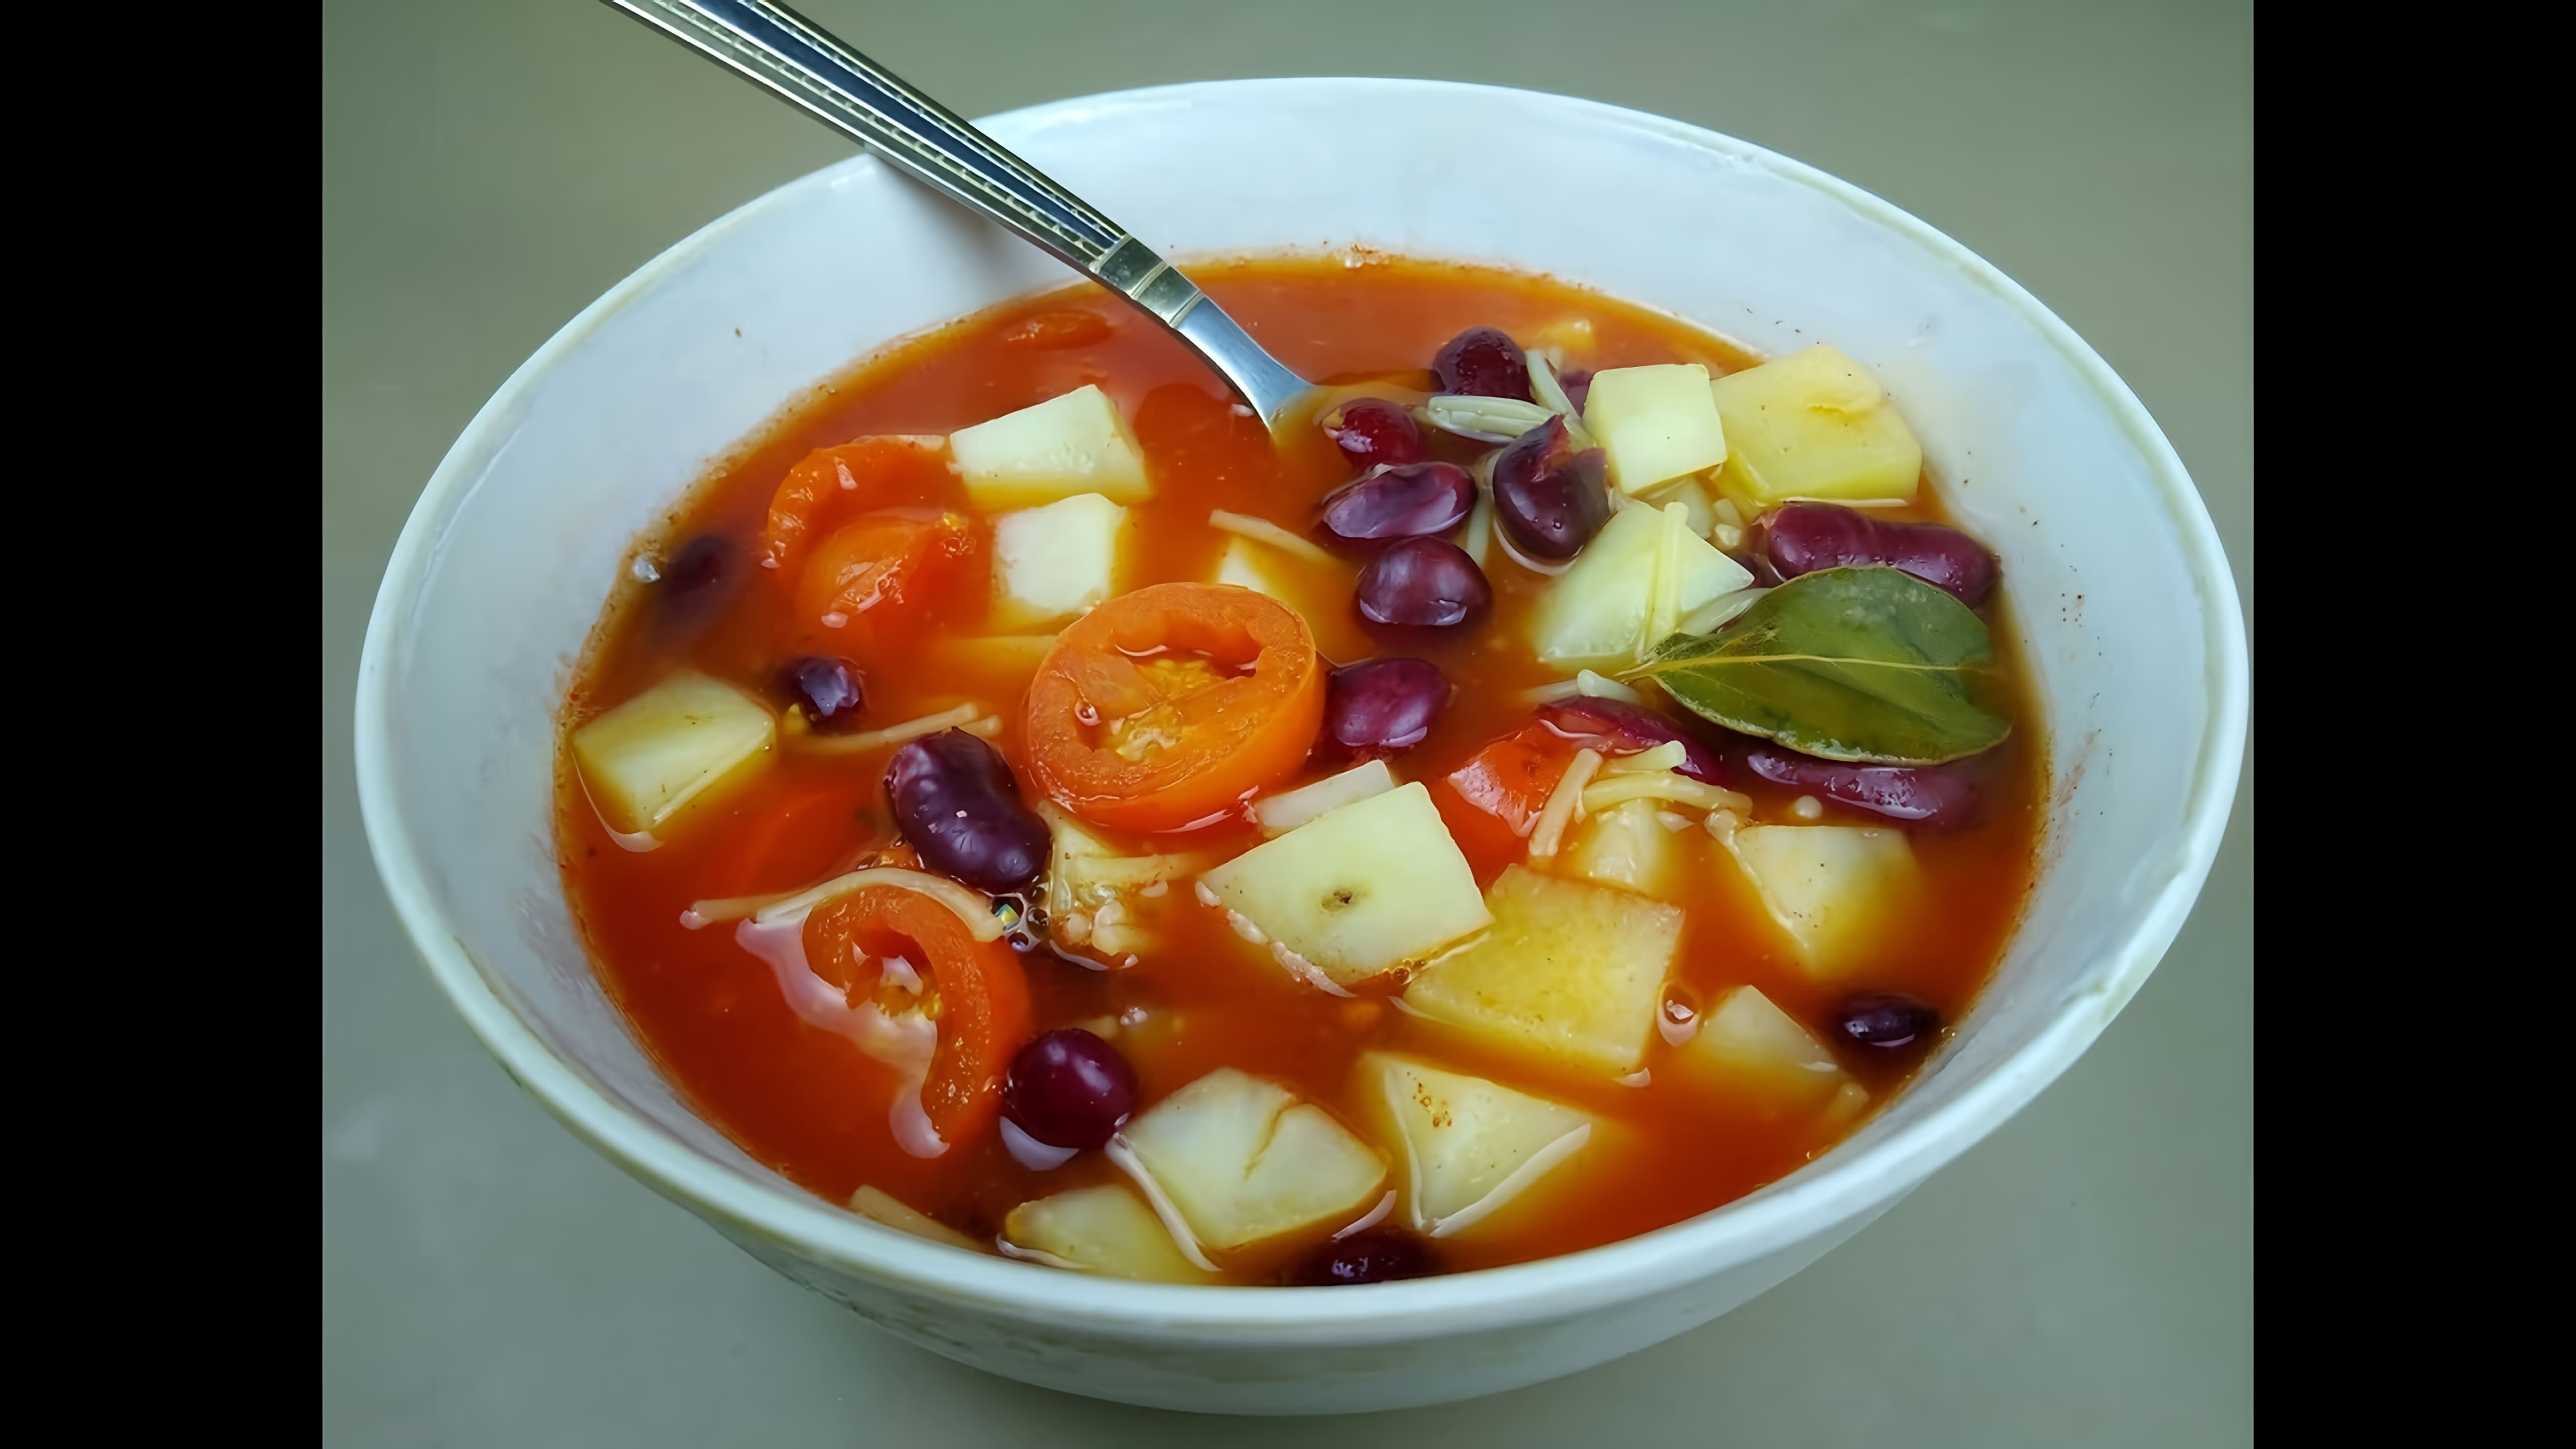 "Томатный суп с красной фасолью: просто и вкусно" - это видео-ролик, который демонстрирует процесс приготовления вкусного и питательного блюда